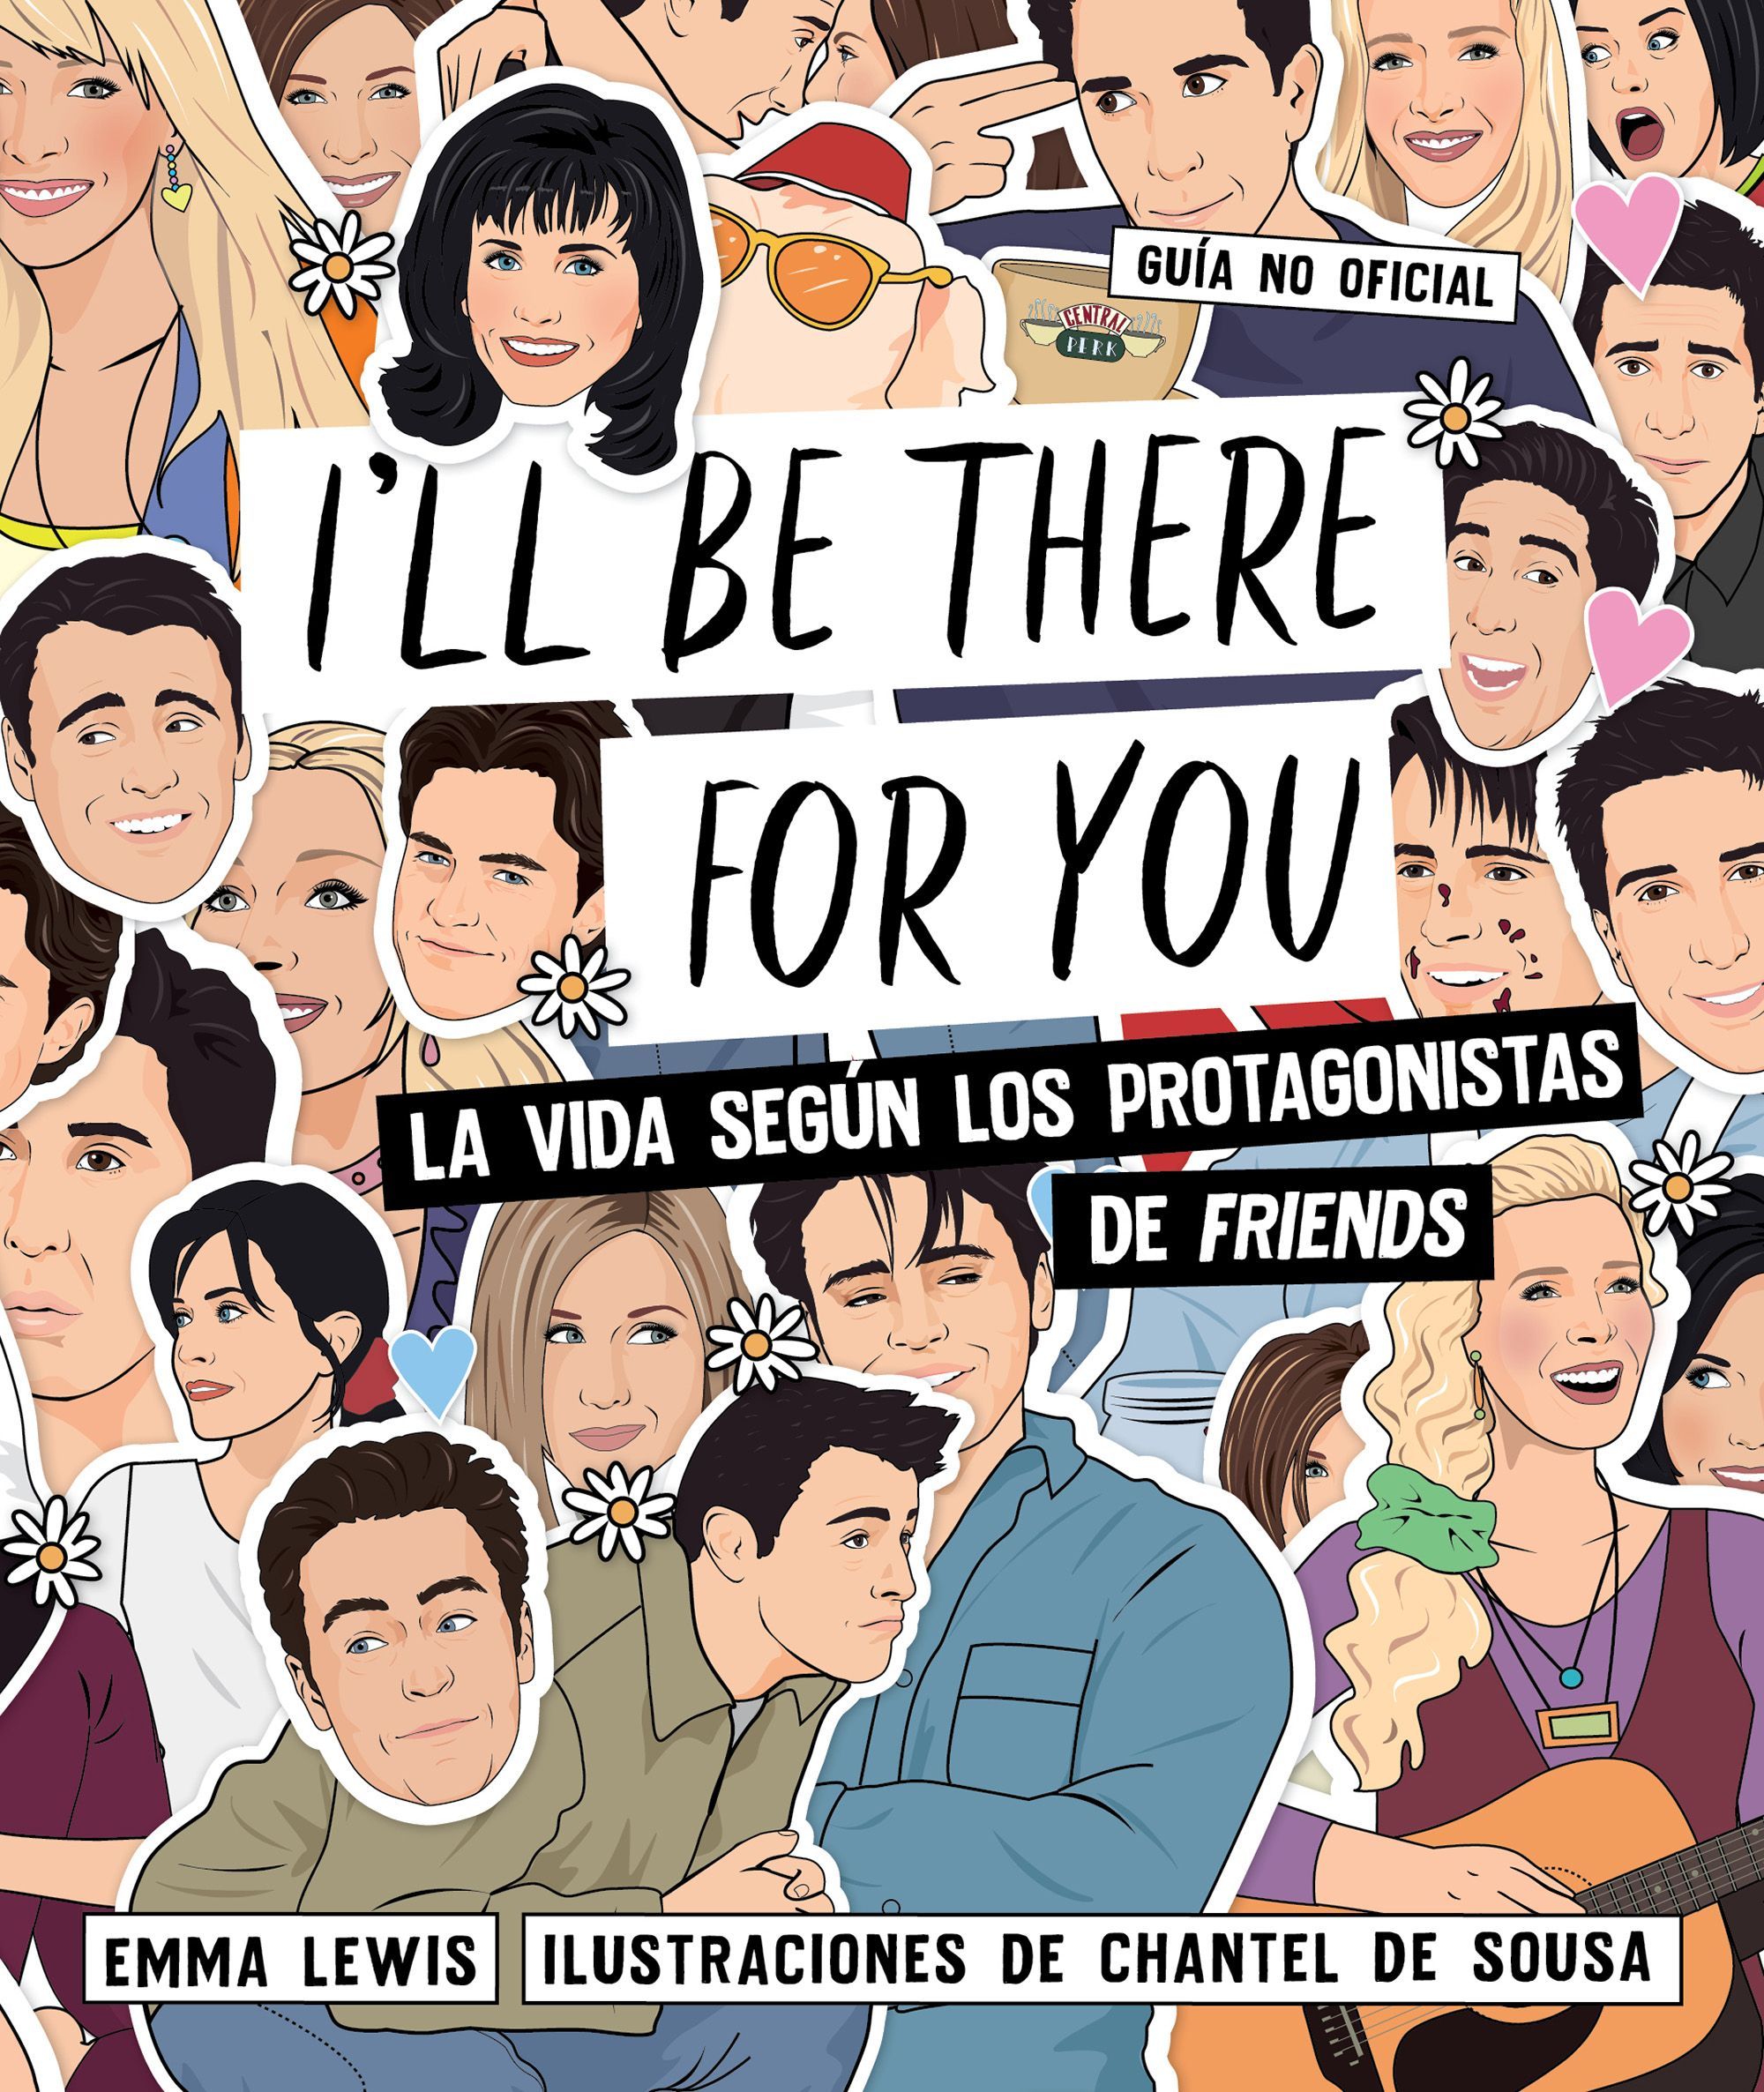 I'LL BE THERE FOR YOU. LA VIDA SEGÚN LOS PROTAGONISTAS DE "FRIENDS"